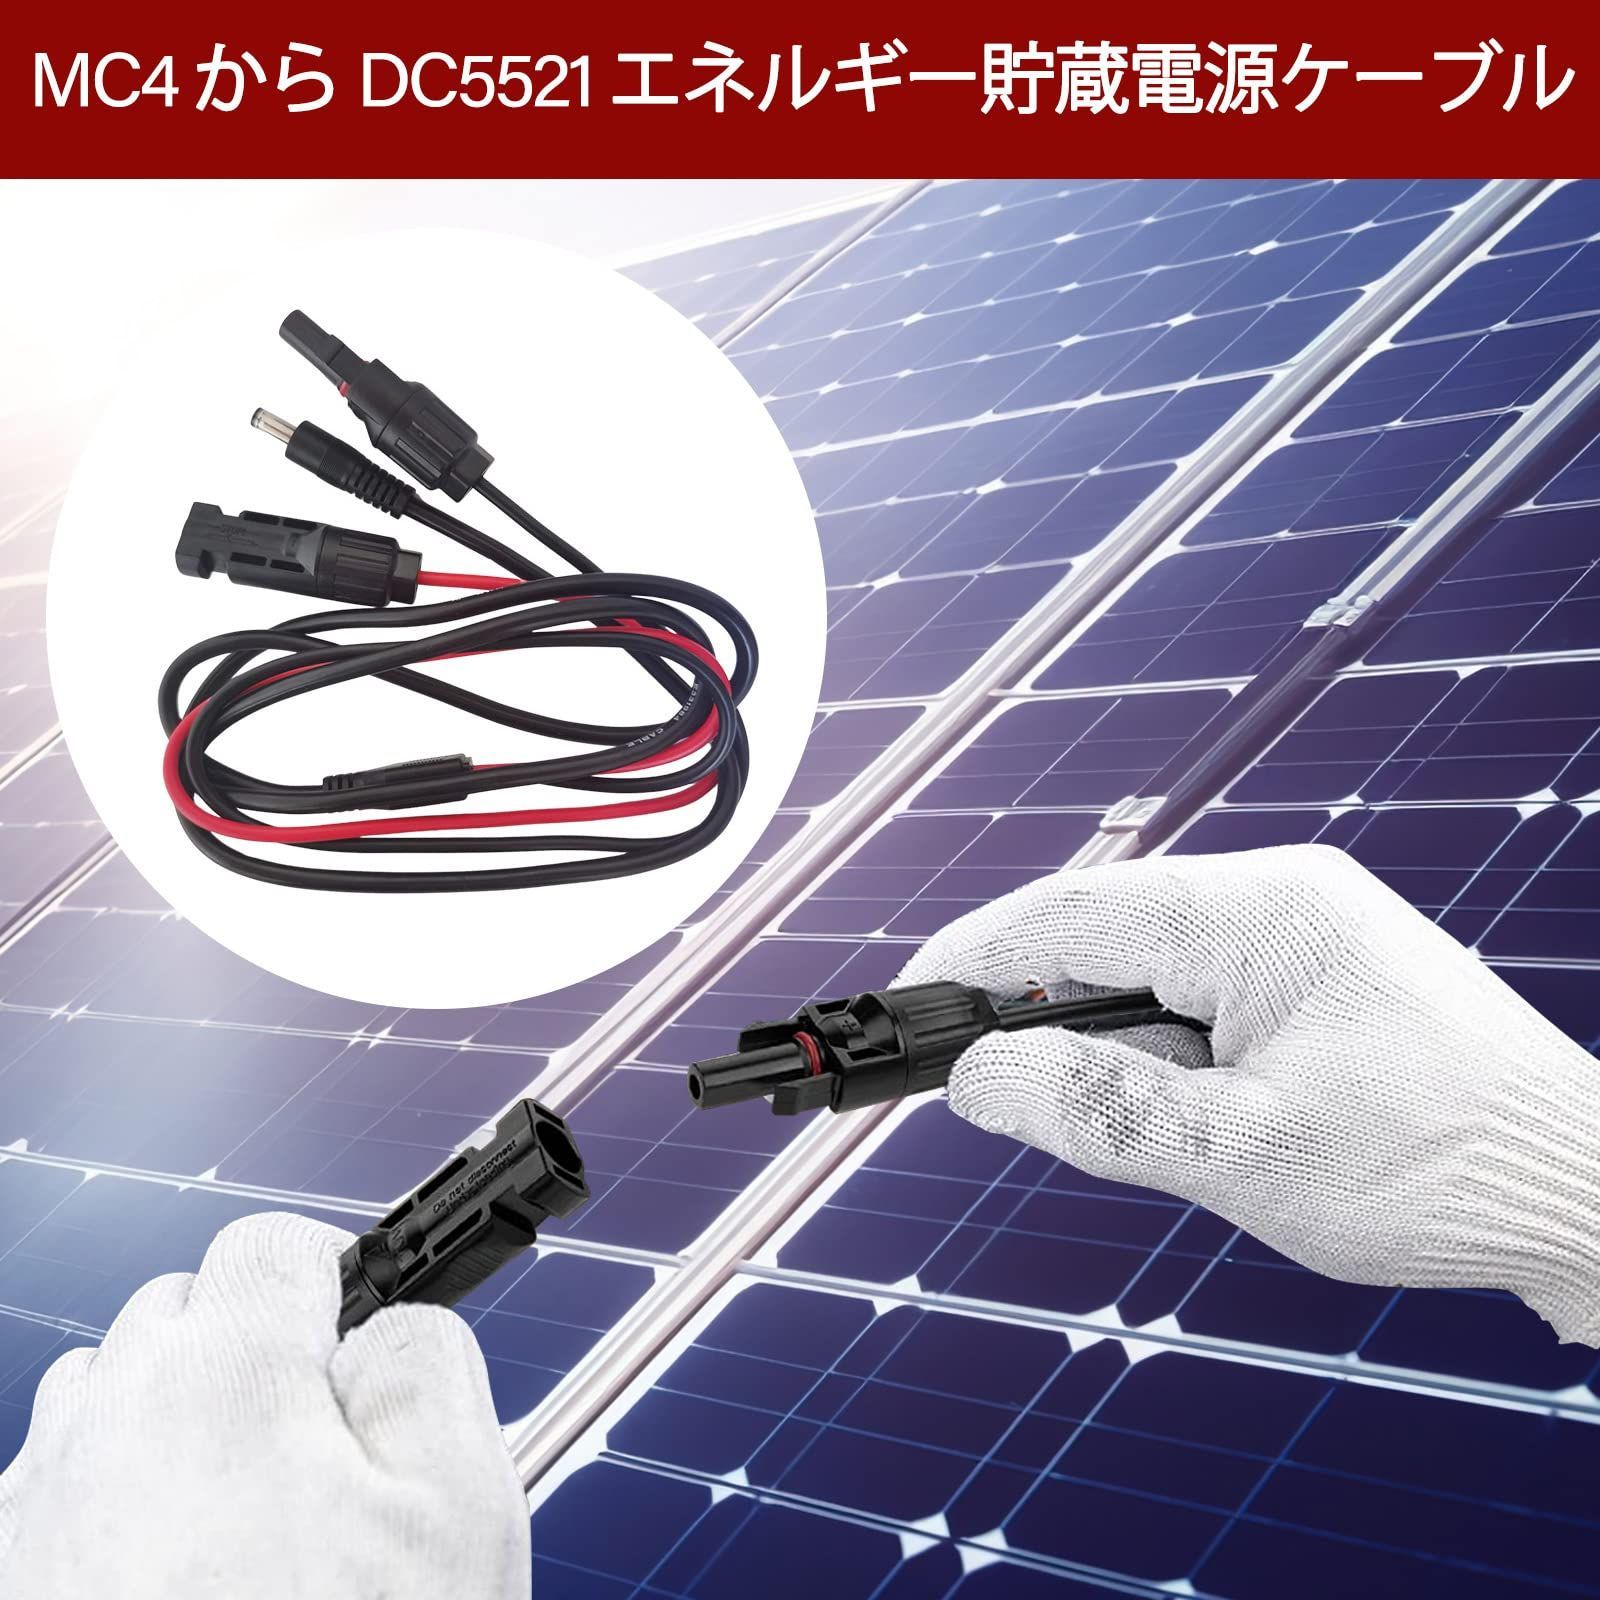 セール100 fieldlabo ソーラーパネル 接続用 MC4コネクター ブラック 高耐候 耐熱 防水 防塵 (100) - 1